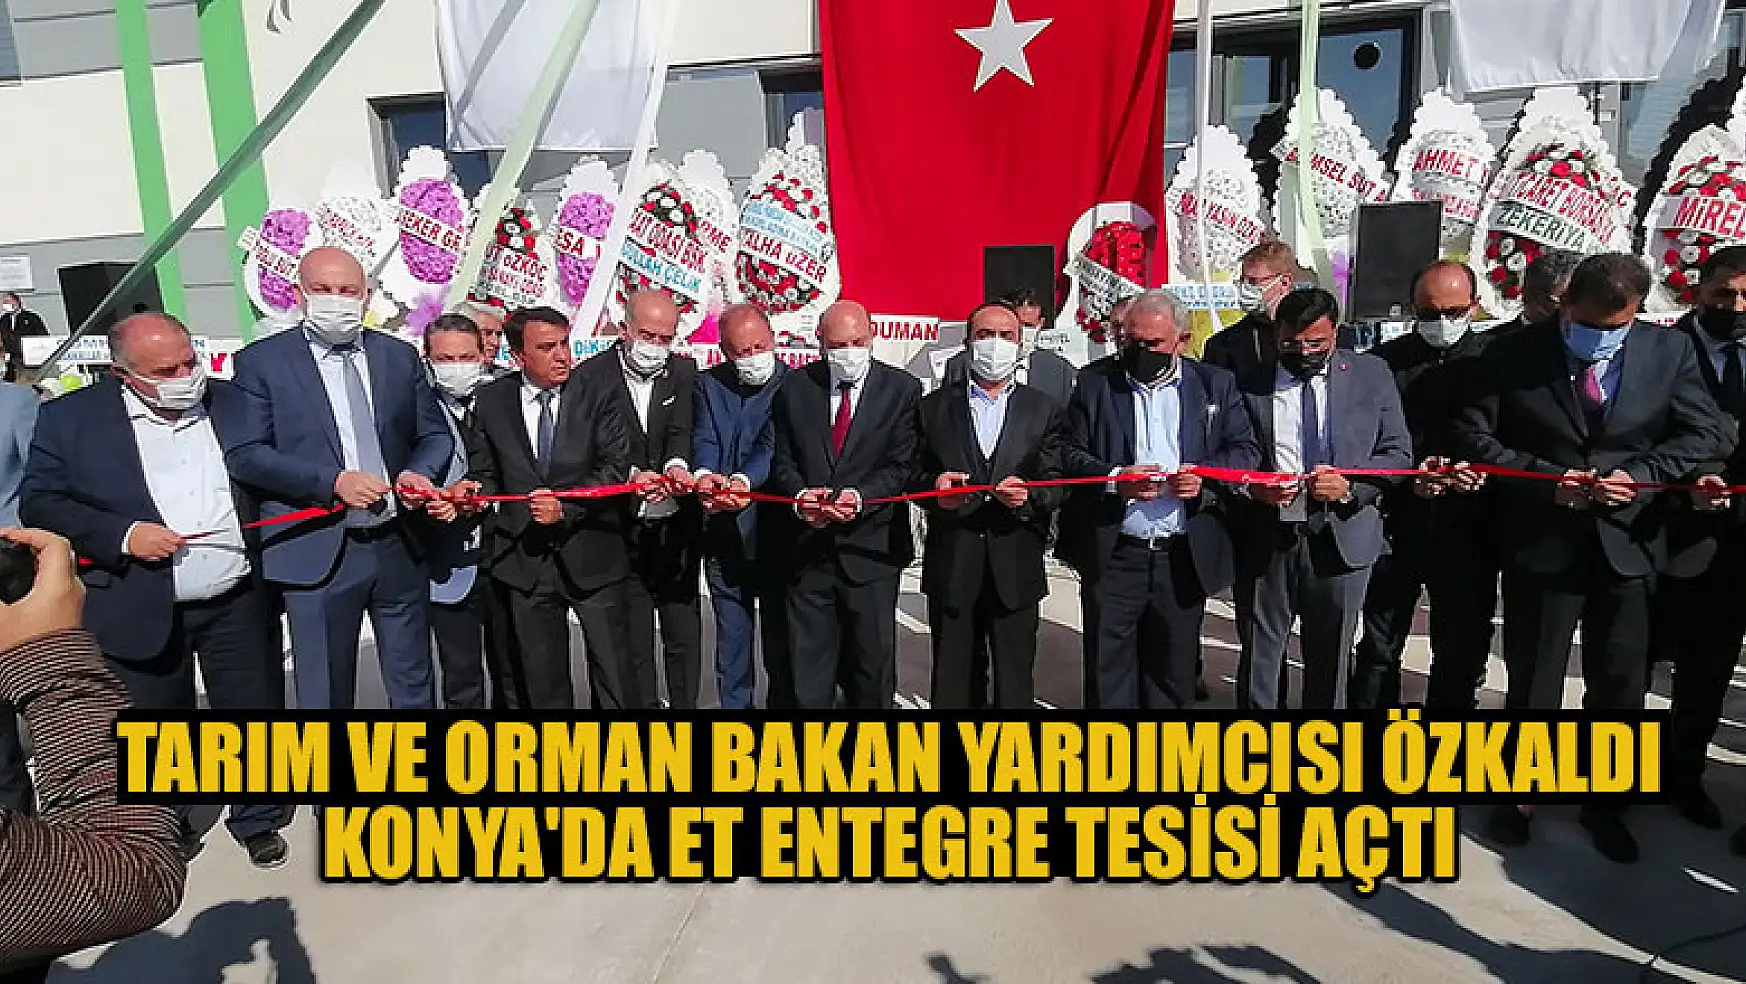 Tarım ve Orman Bakan Yardımcısı Özkaldı, Konya'da et entegre tesisi açtı